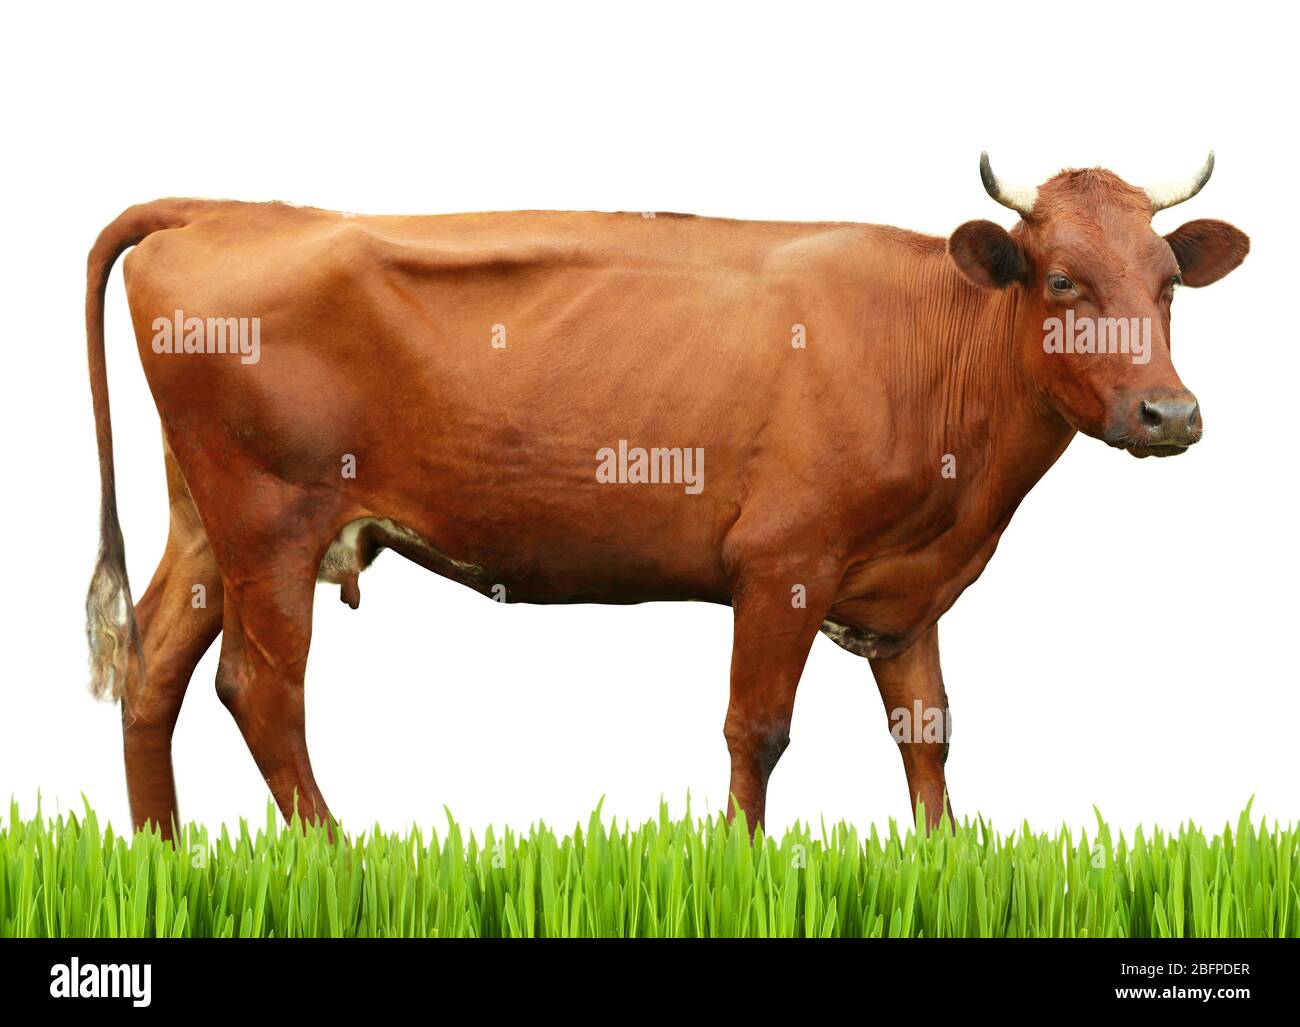 Cow on white background. Farm animal concept. Stock Photo